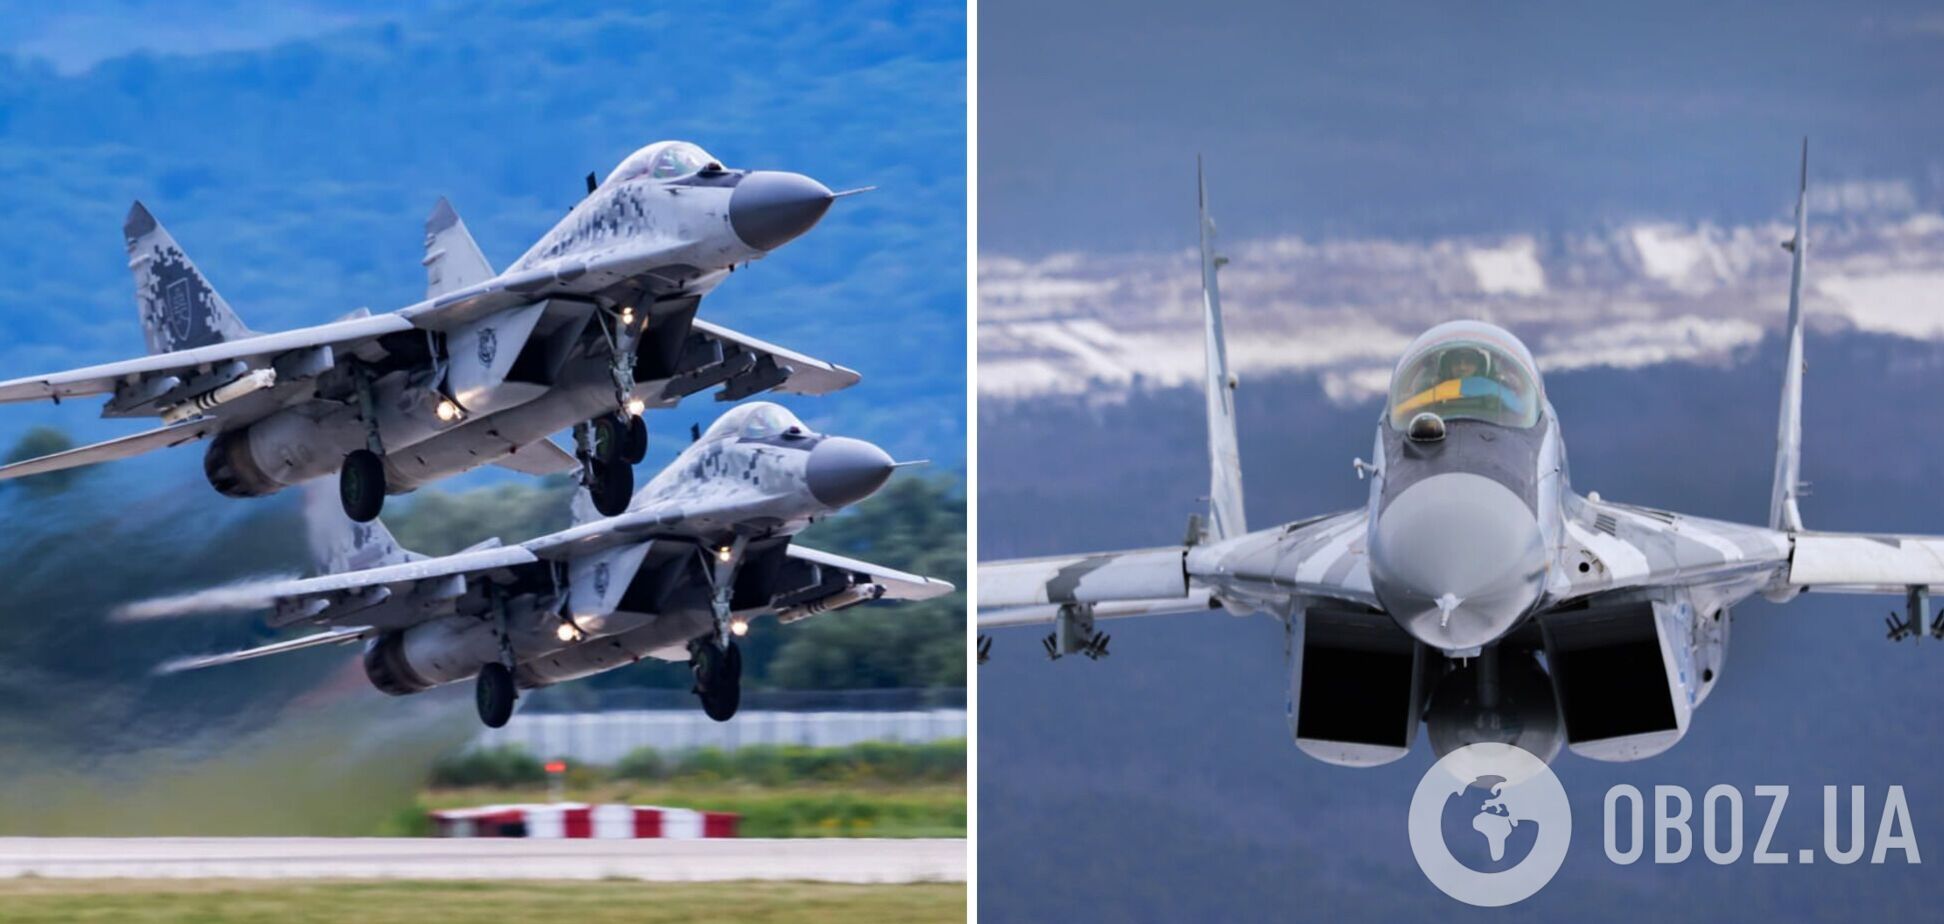 Польща найближчими днями передасть Україні чотири винищувачі МіГ-29, – Дуда